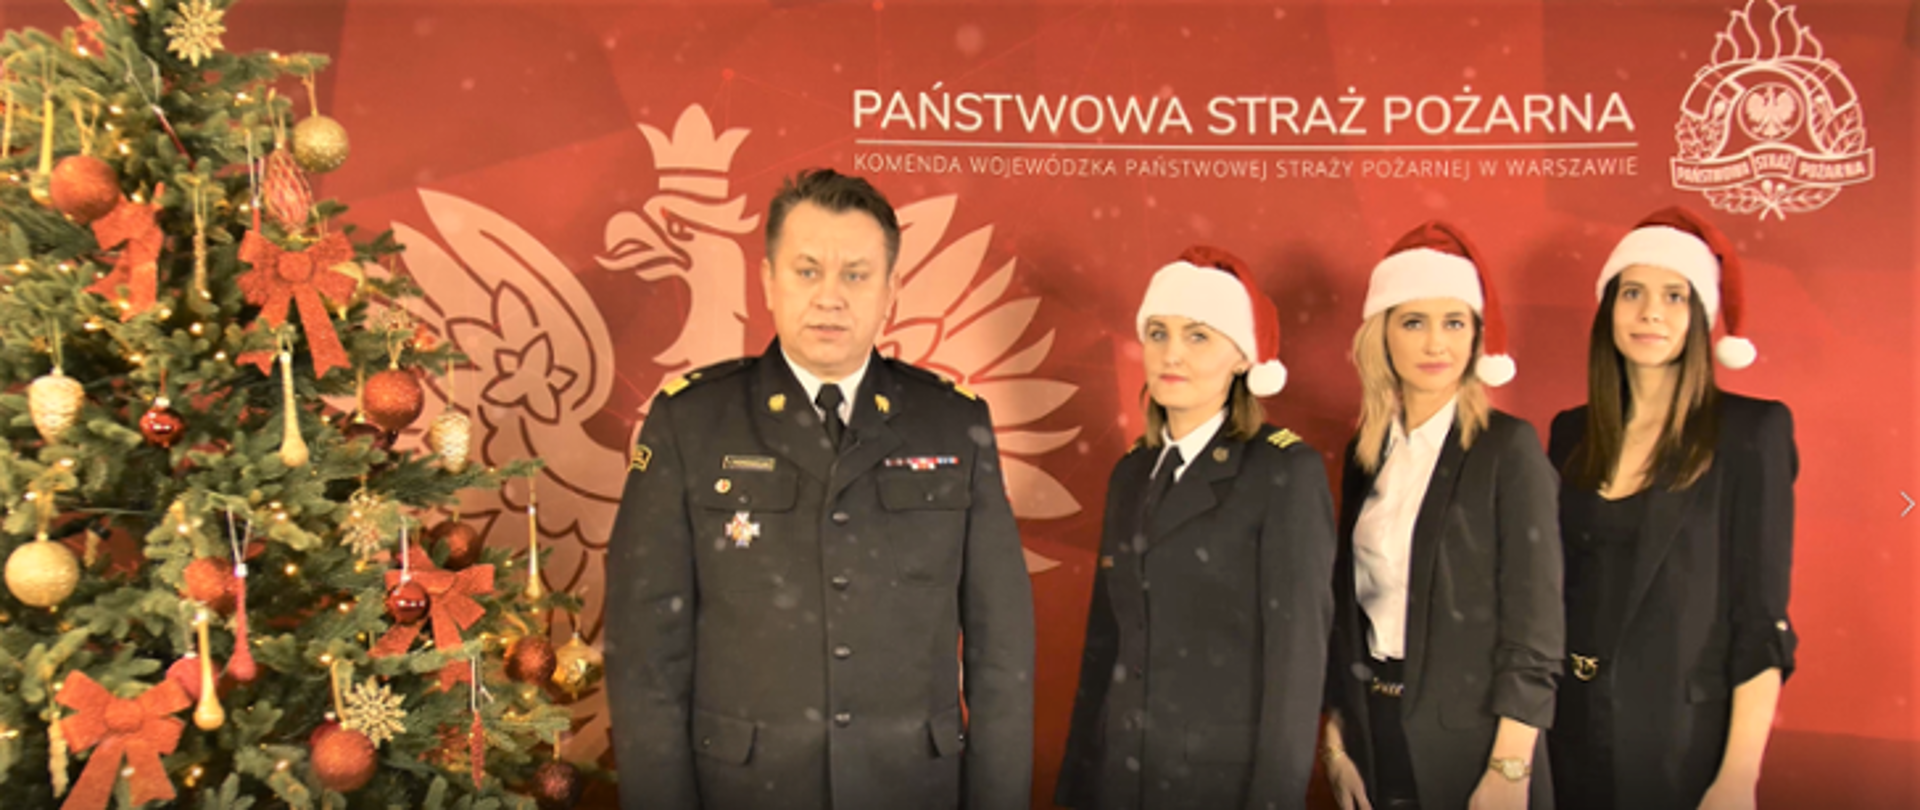 Na zdjęciu widoczny komendant wojewódzki PSP w mundurze wyjściowym. Po jego prawej stronie ubrana, świąteczna choinka, a po lewej trzy kobiety - jedna w mundurze wyjściowym, pozostałe dwie w ubraniach cywilnych, z czapkami mikołaja na głowach. W tle czerwona plansza z orłem, logiem PSP i napisem Państwowa Straż Pożarna.